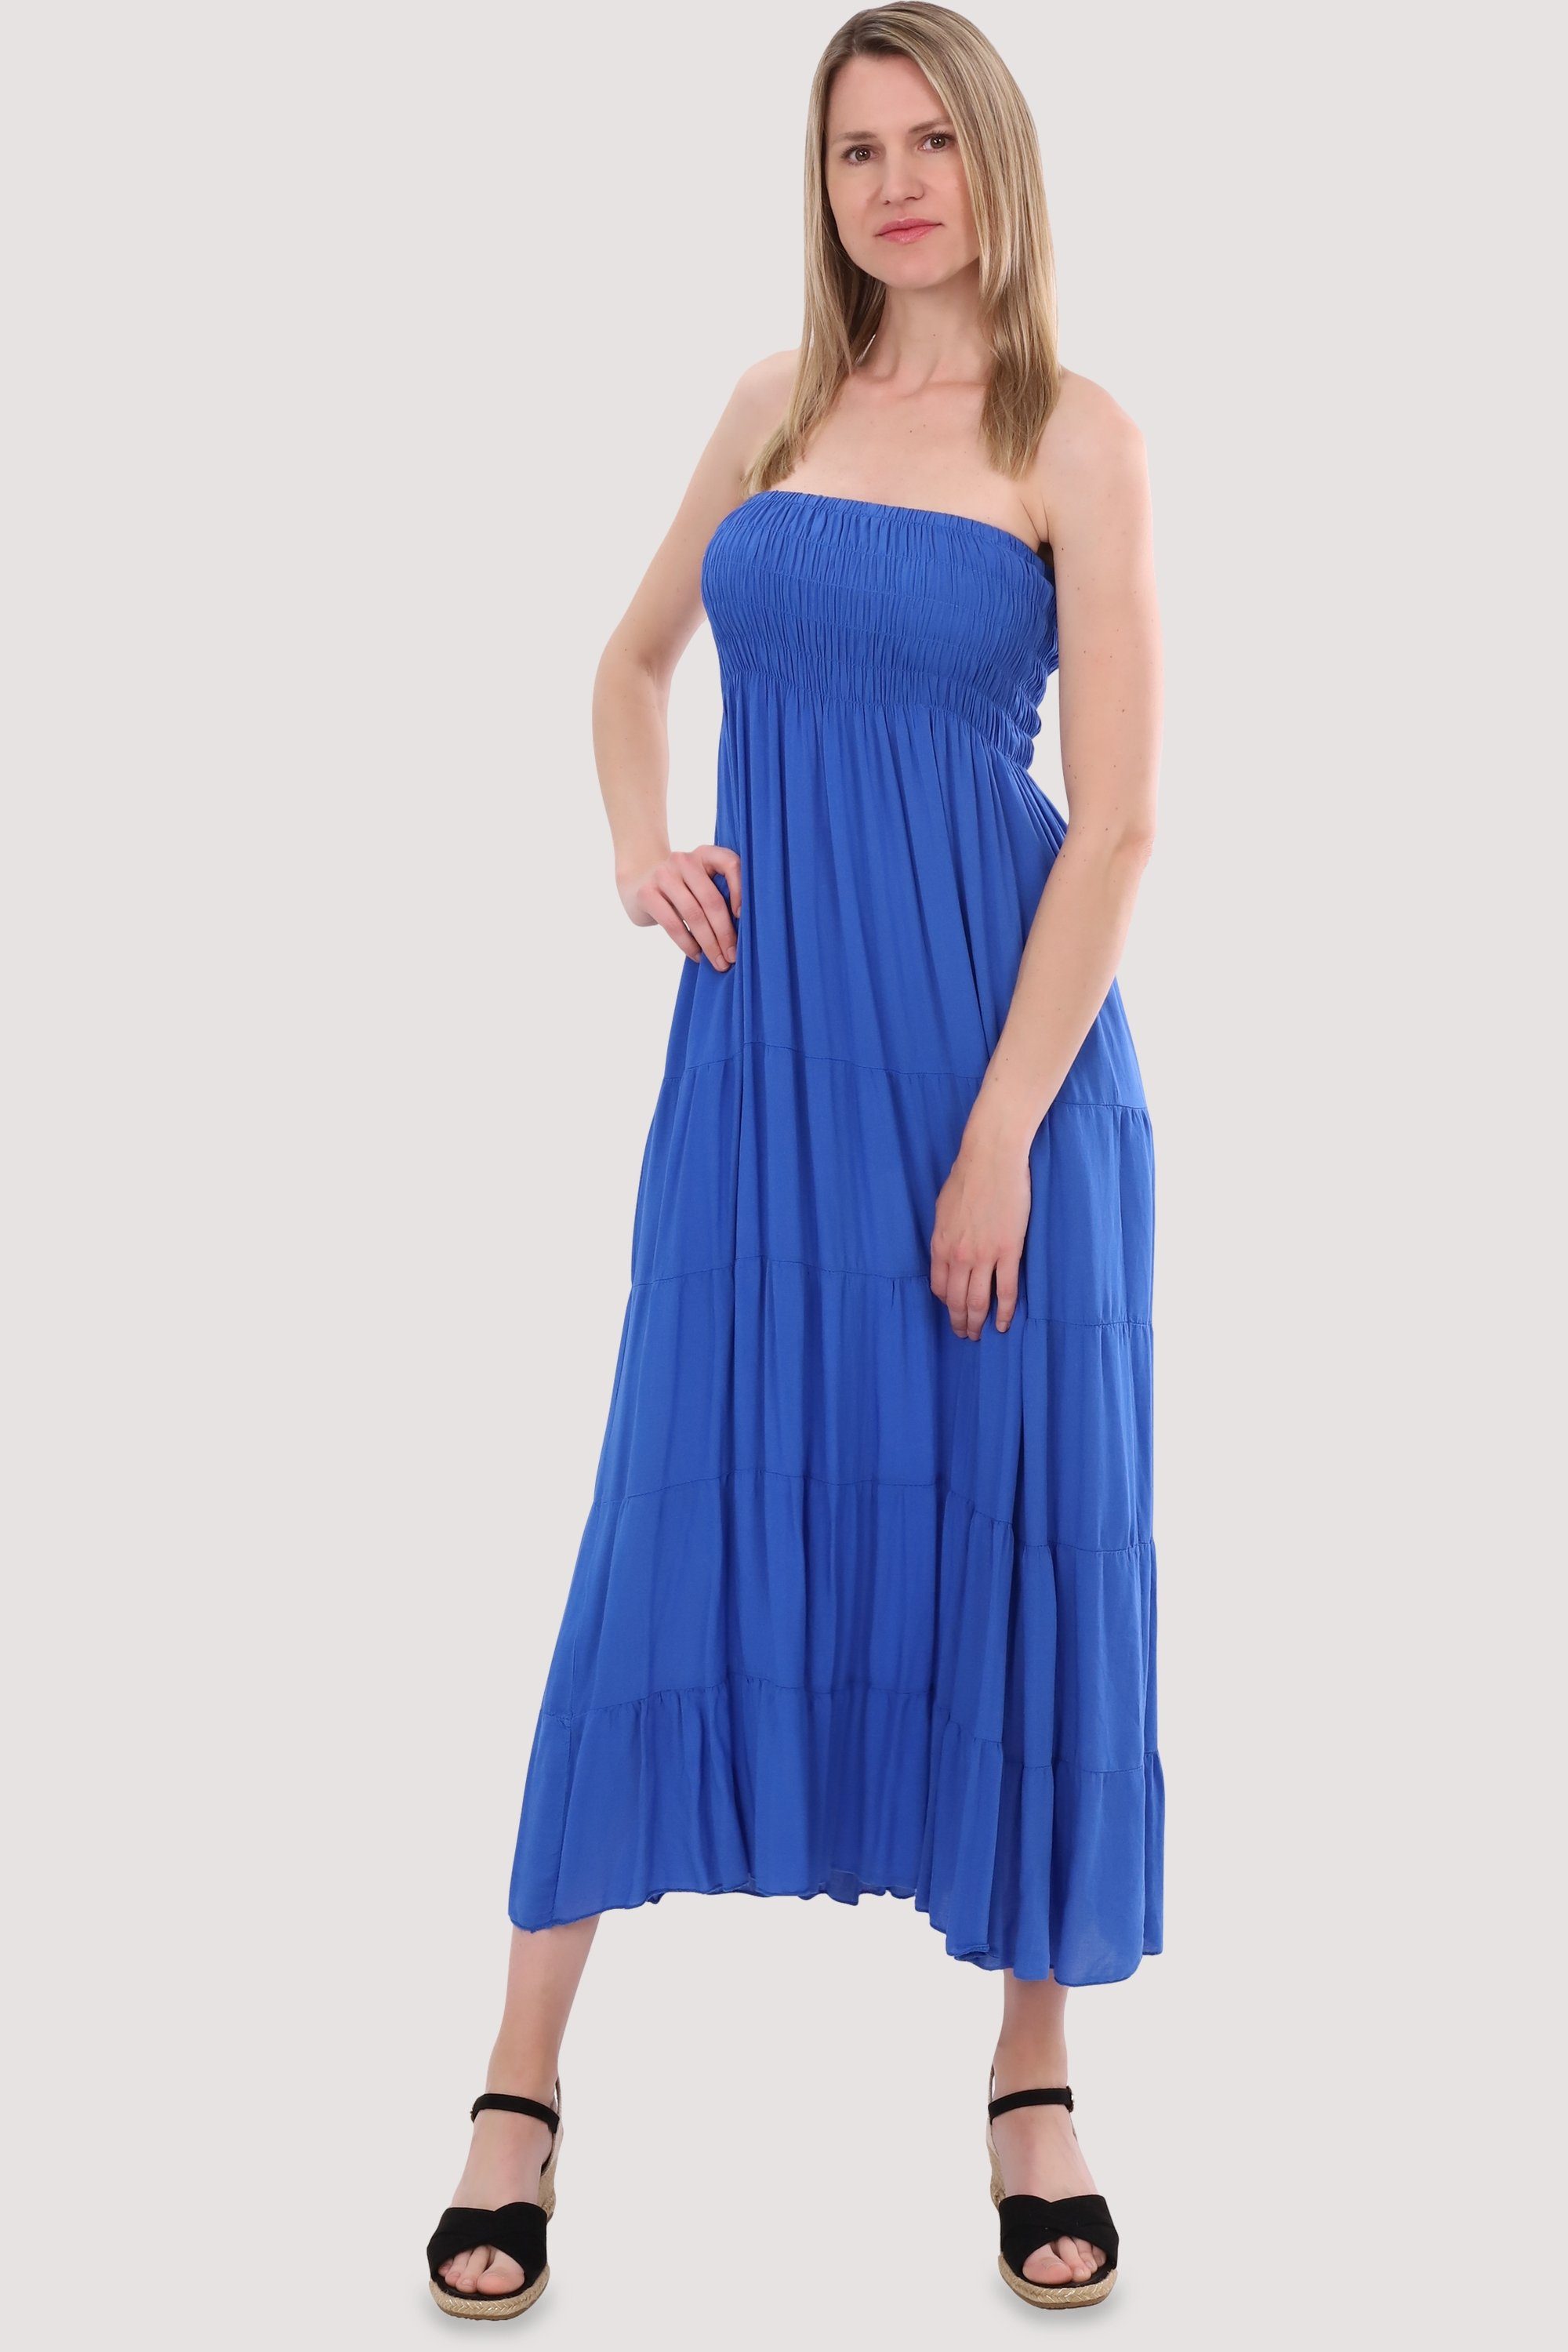 malito more than fashion Bandeaukleid 4635 figurumspielendes Sommerkleid Strandkleid Einheitsgröße blau